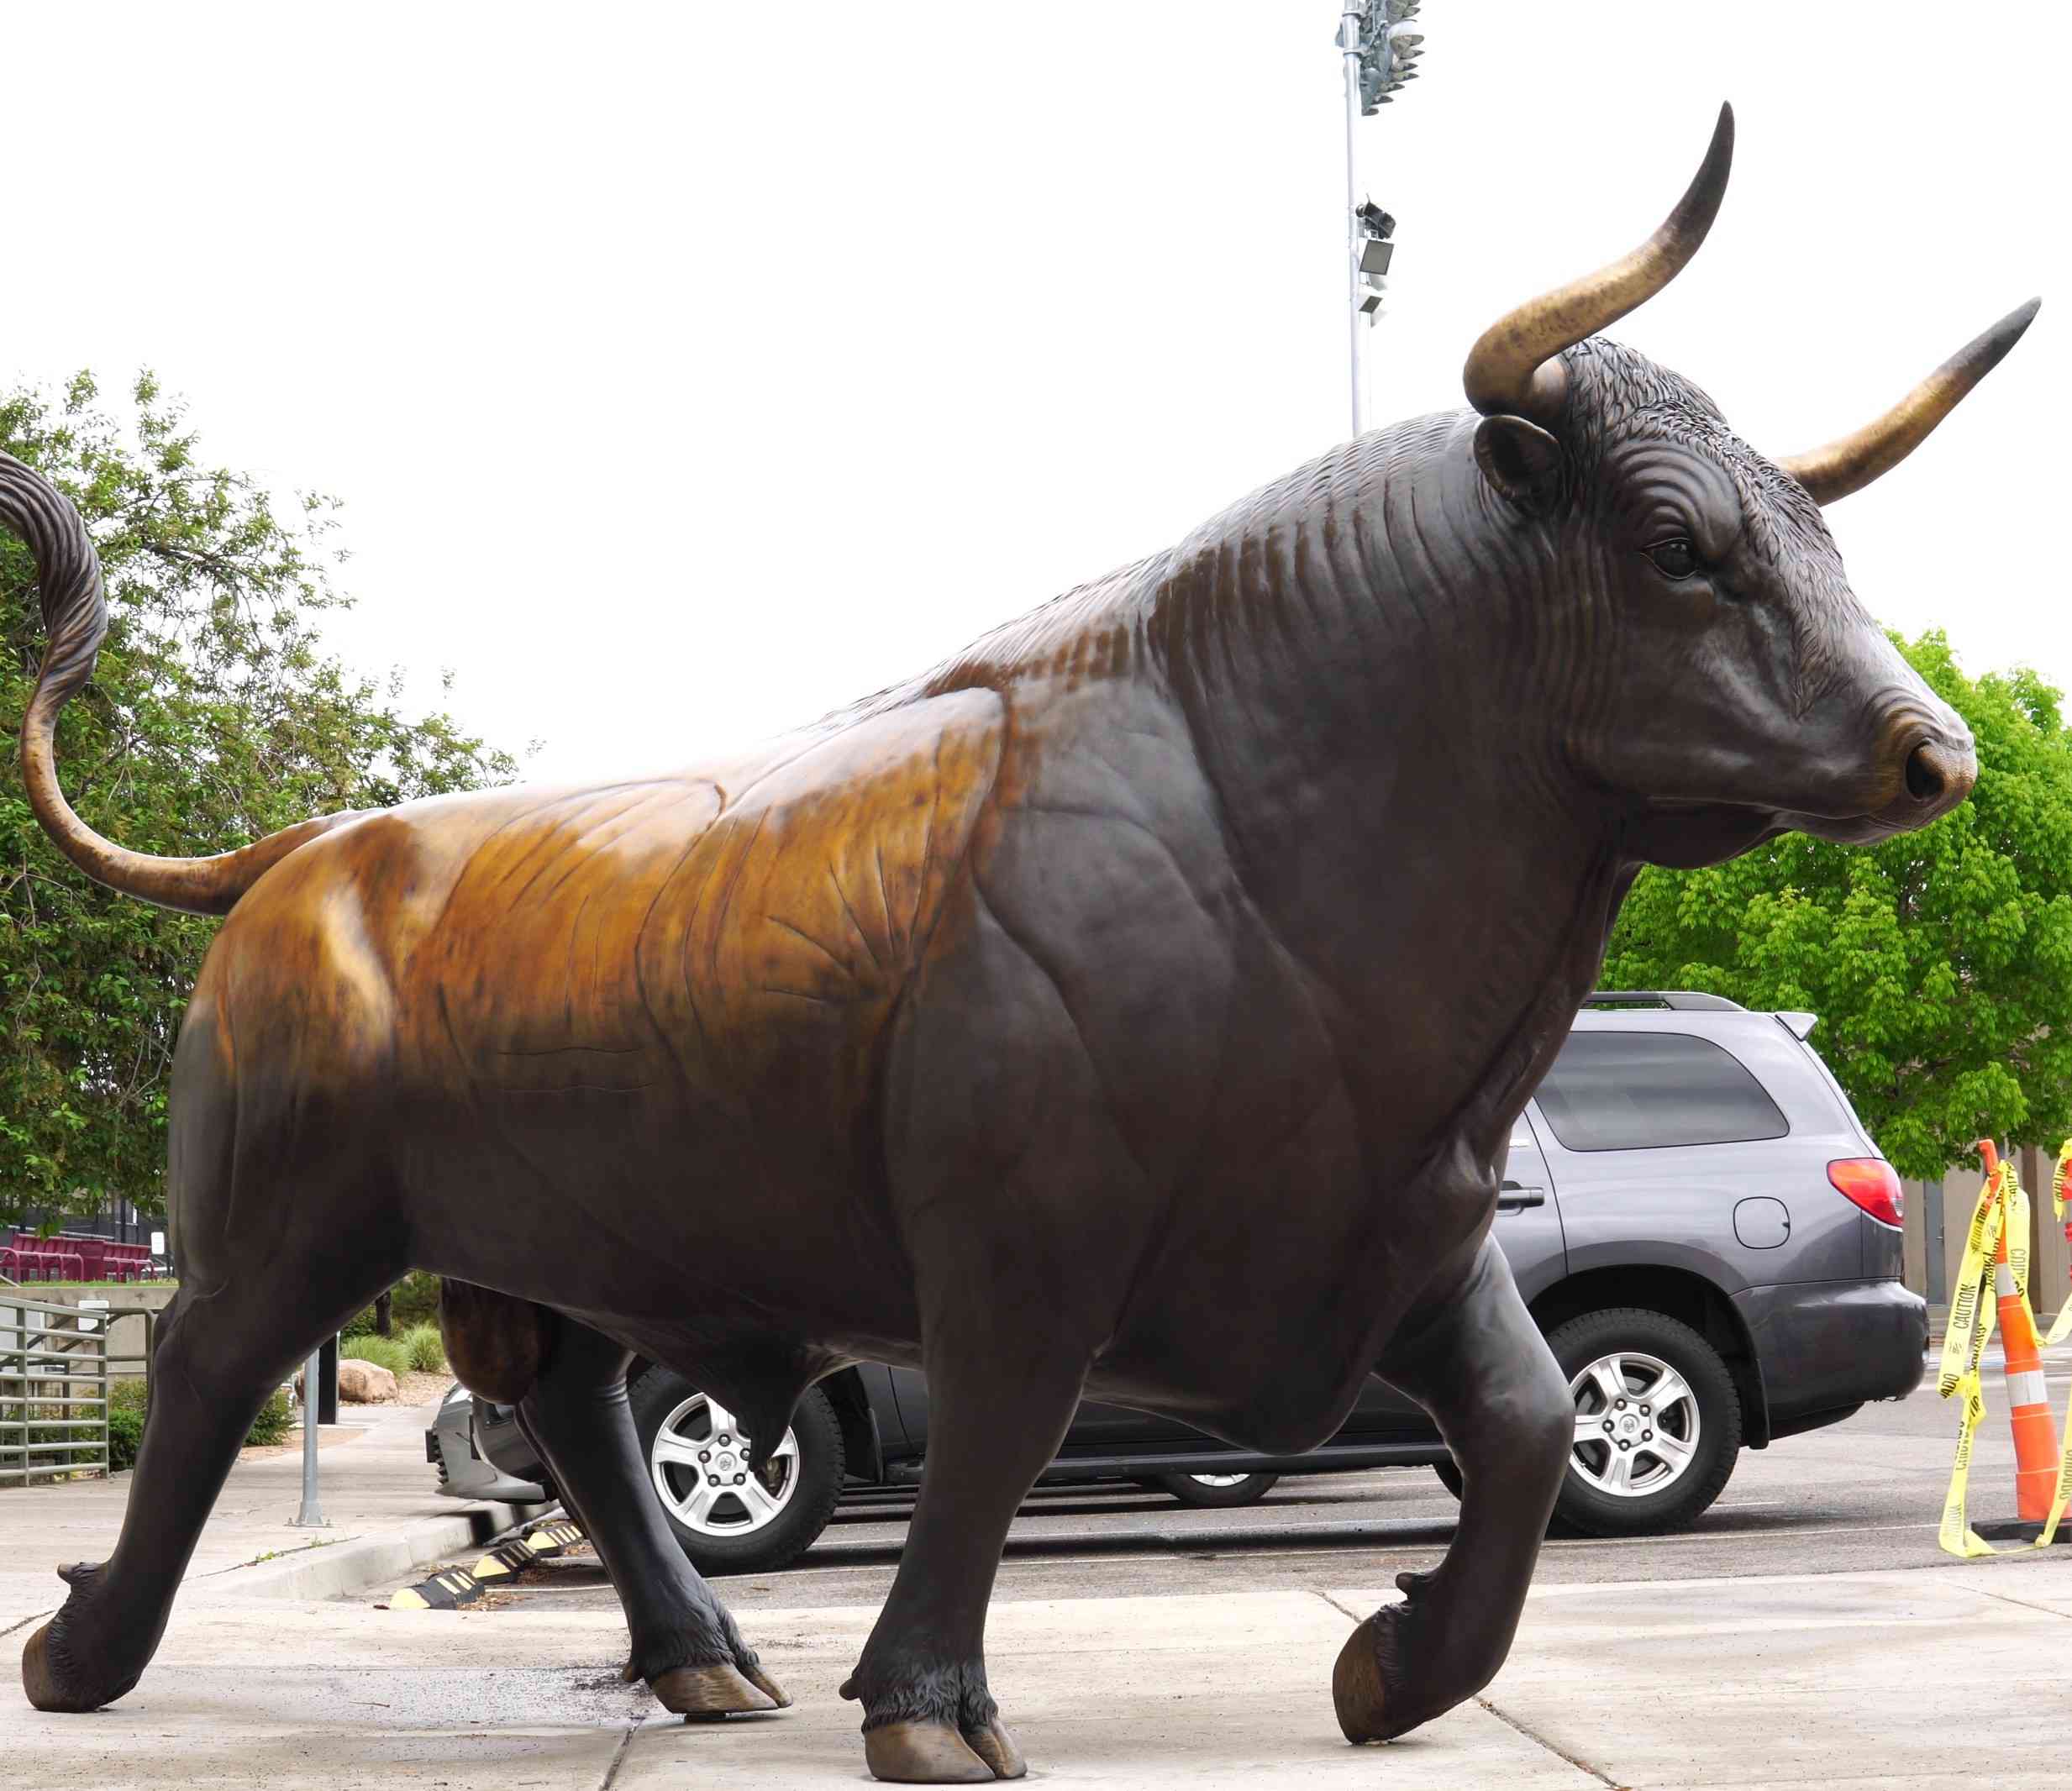 Square bull statue